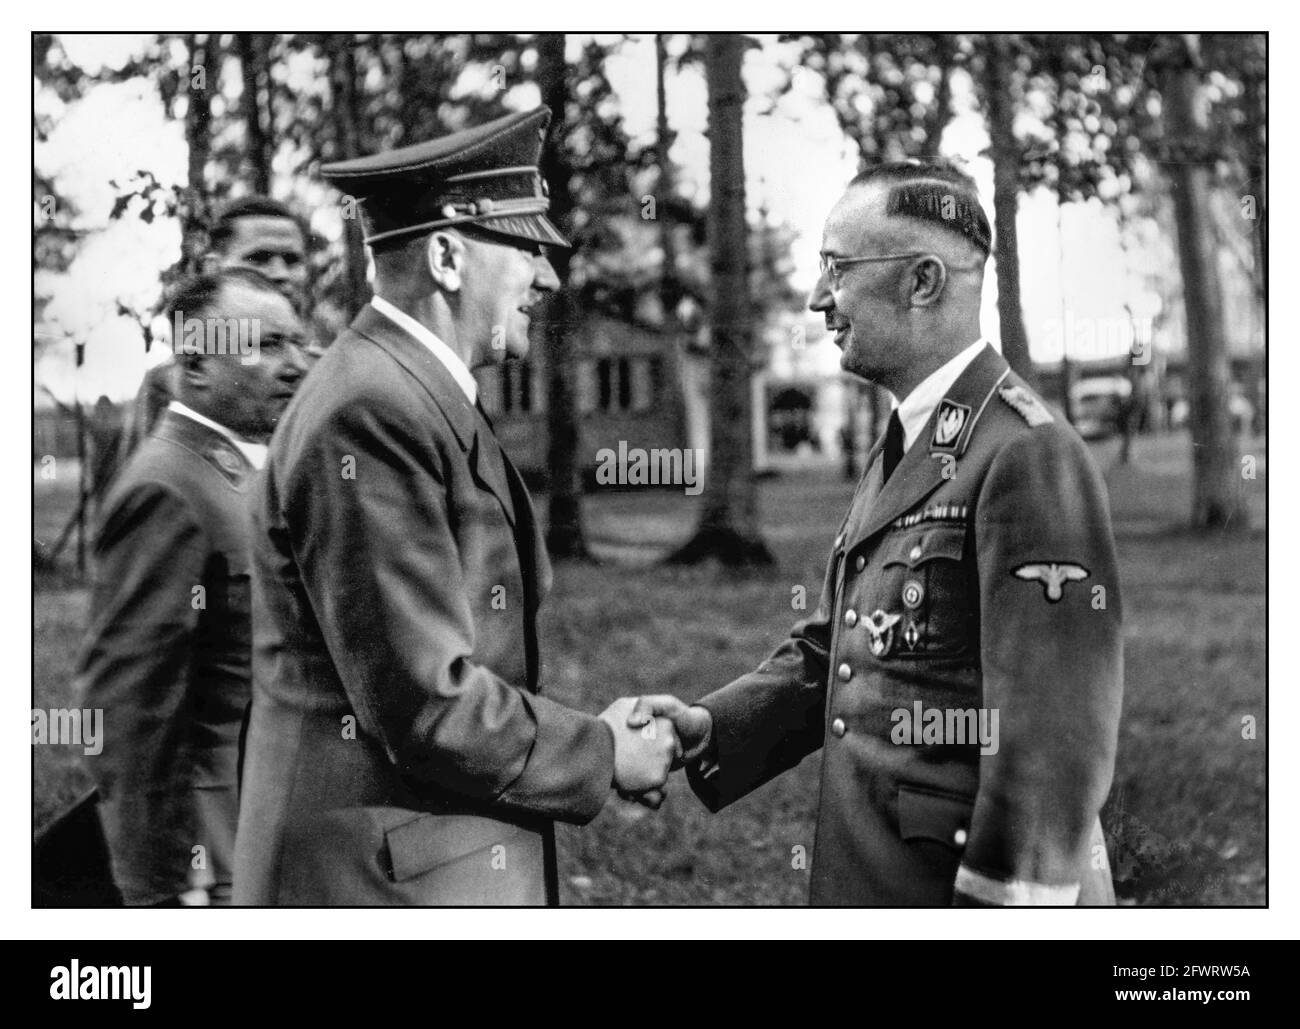 Adolf Hitler grüßt Heinrich Himmler und wünscht ihm alles gute zum Geburtstag, 1943. Adolf Hitler mit dem Nazi-SS-Führer Heinrich Himmler im Oktober 1943 im Wolfs-Lair-Hauptquartier "Wolfssschanze" bei Rastenburg in Ostpreußen. Stockfoto